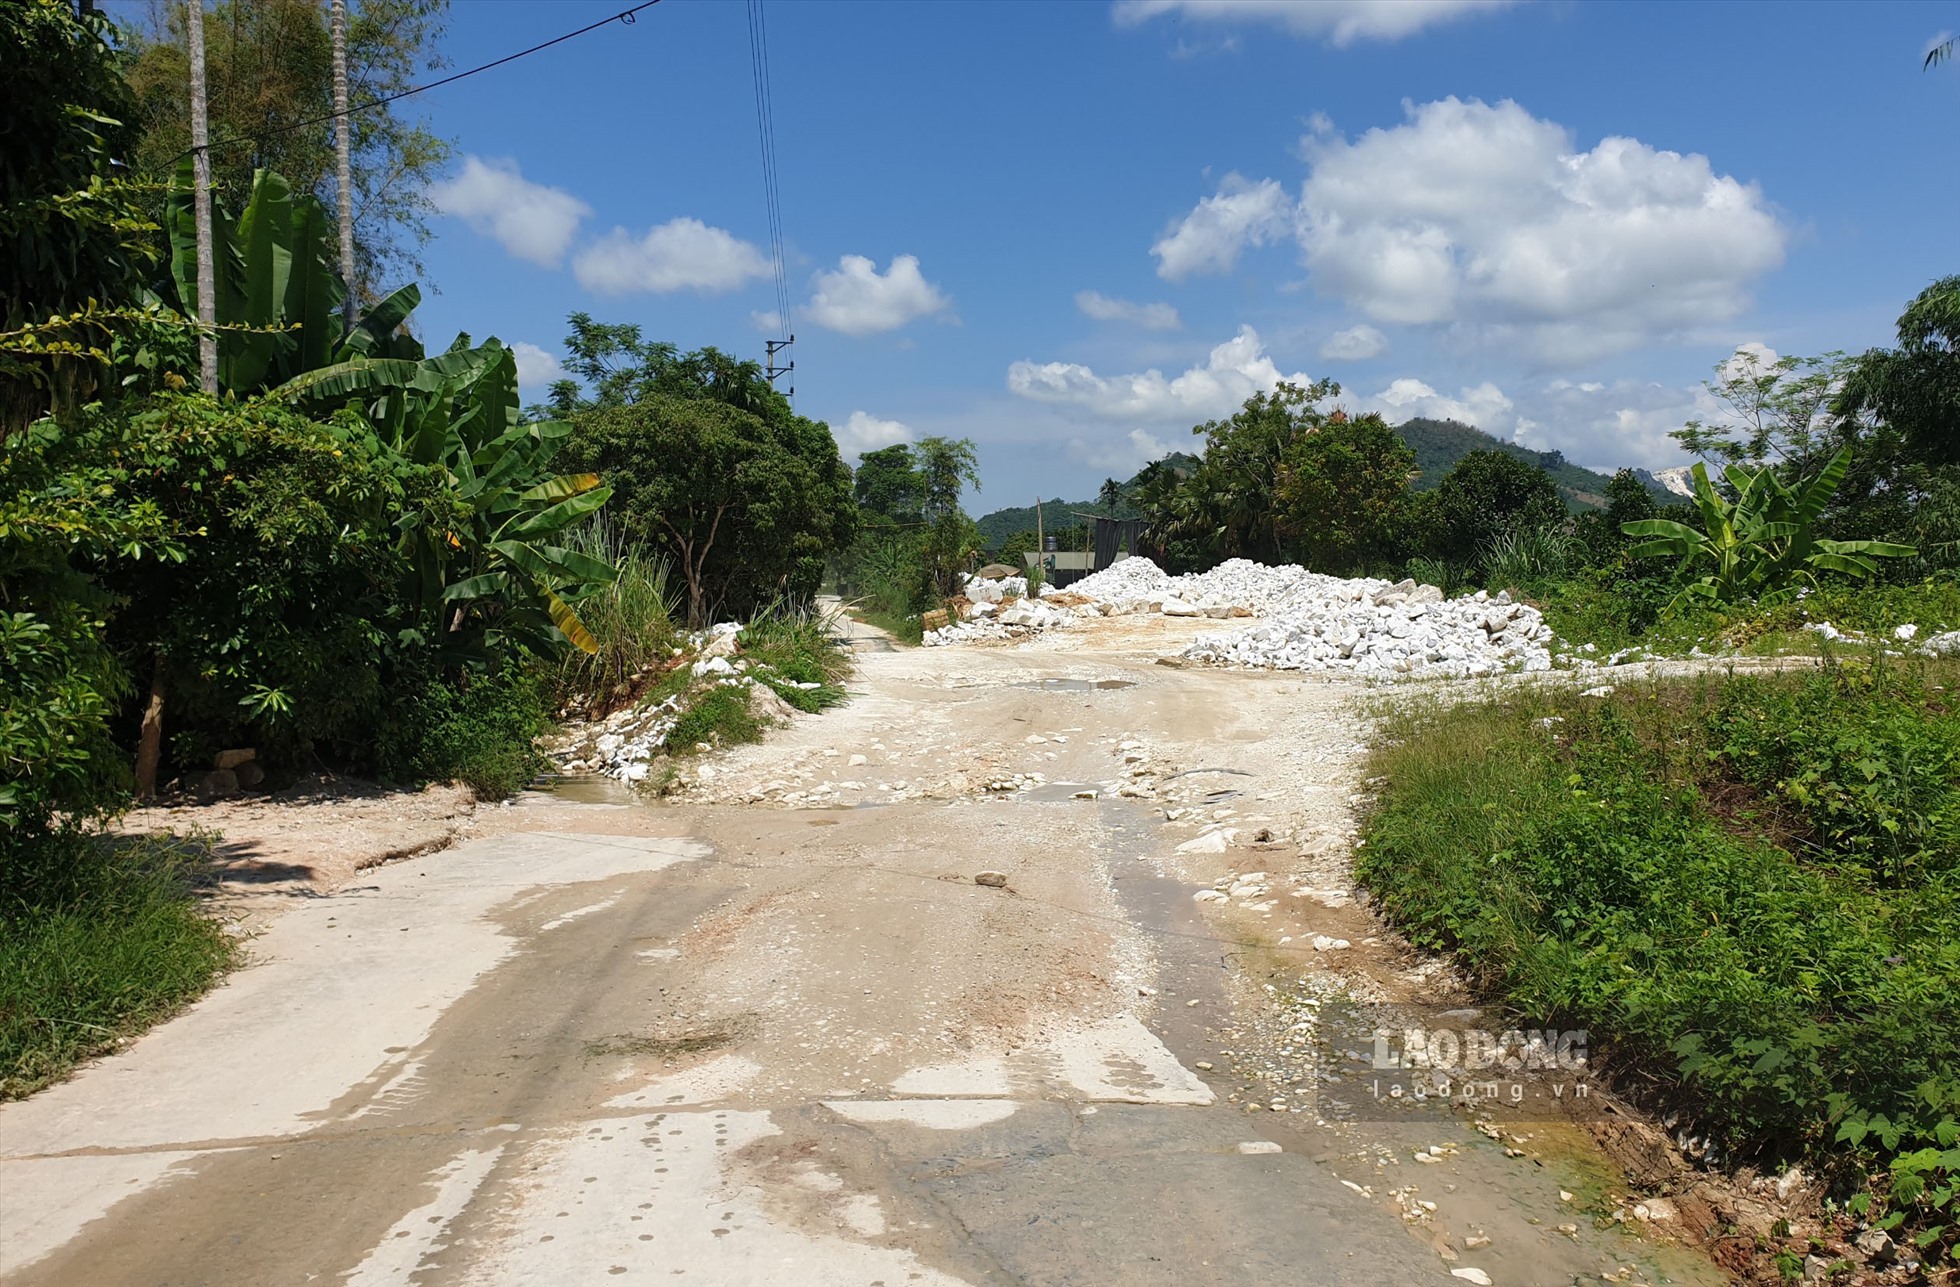 Cn đường liên thôn bị chia cắt bởi những bùn thải, đá vụn.